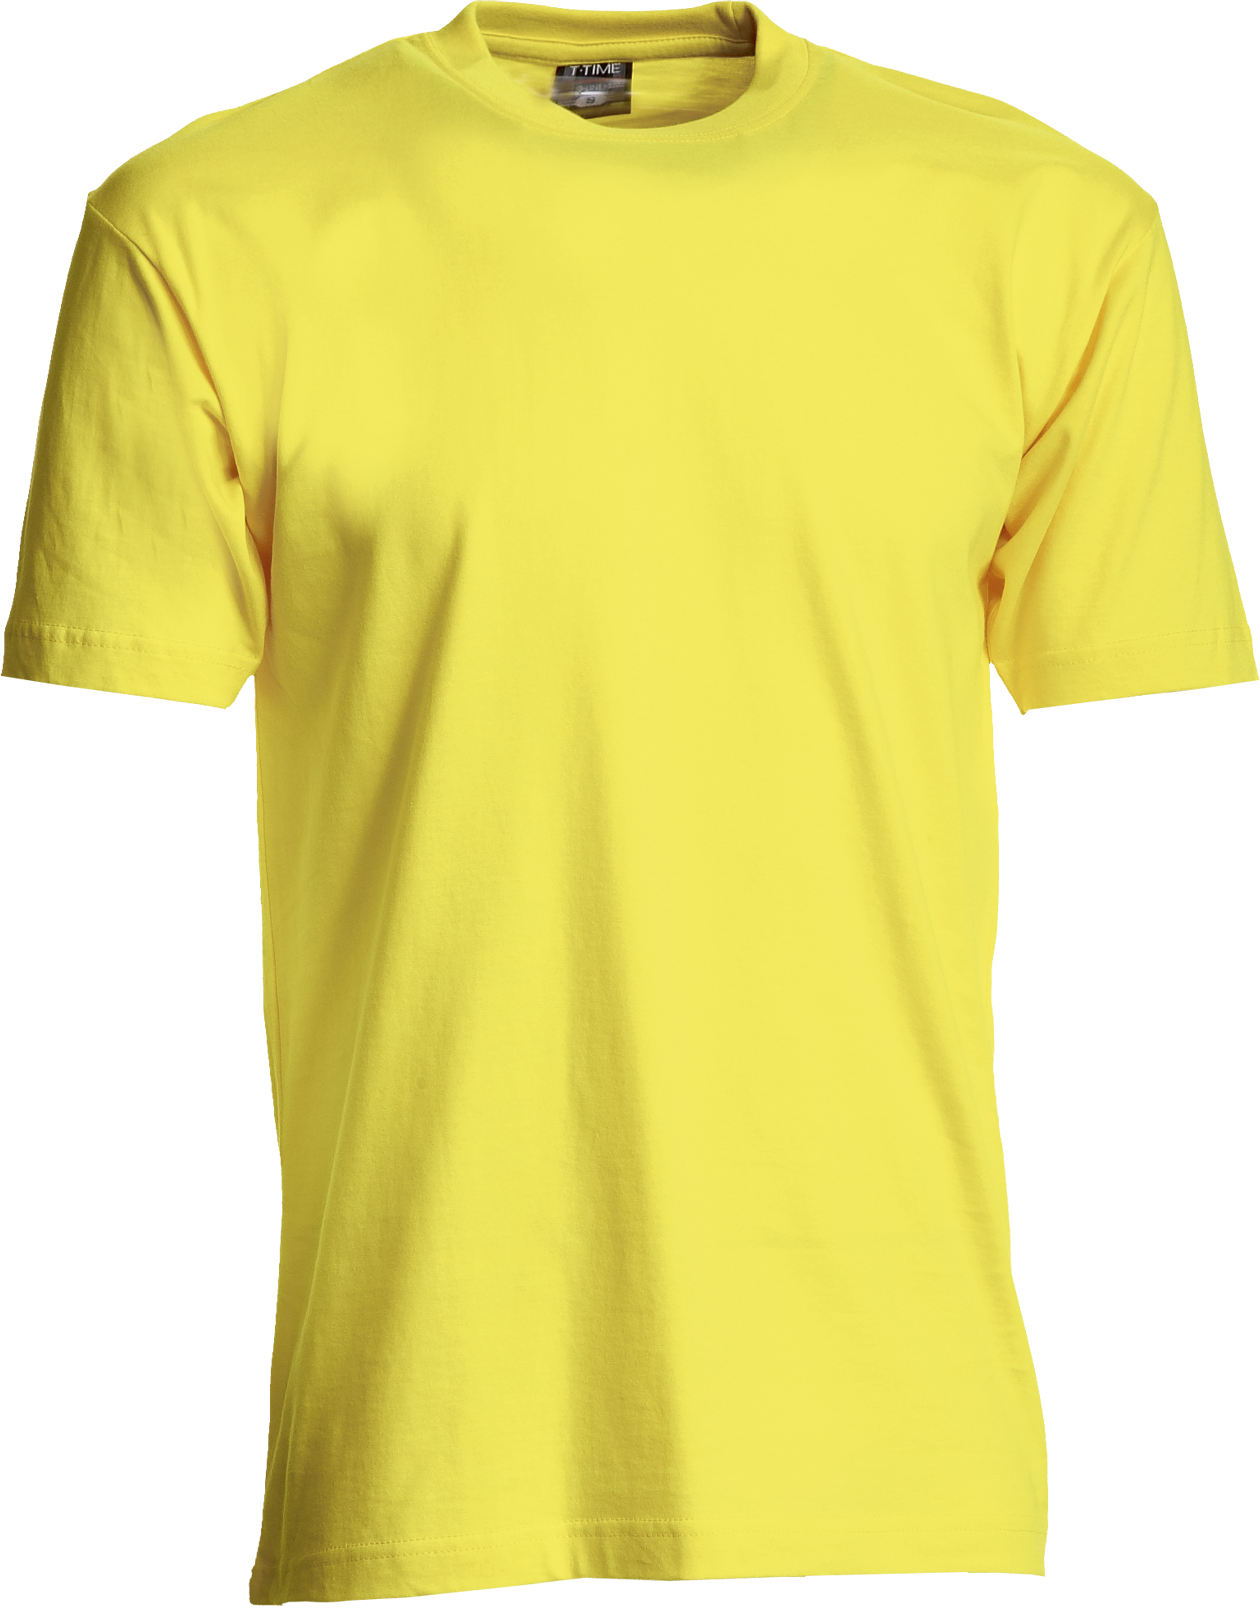 Gelb Herren T-Shirt, Basic (8150101)